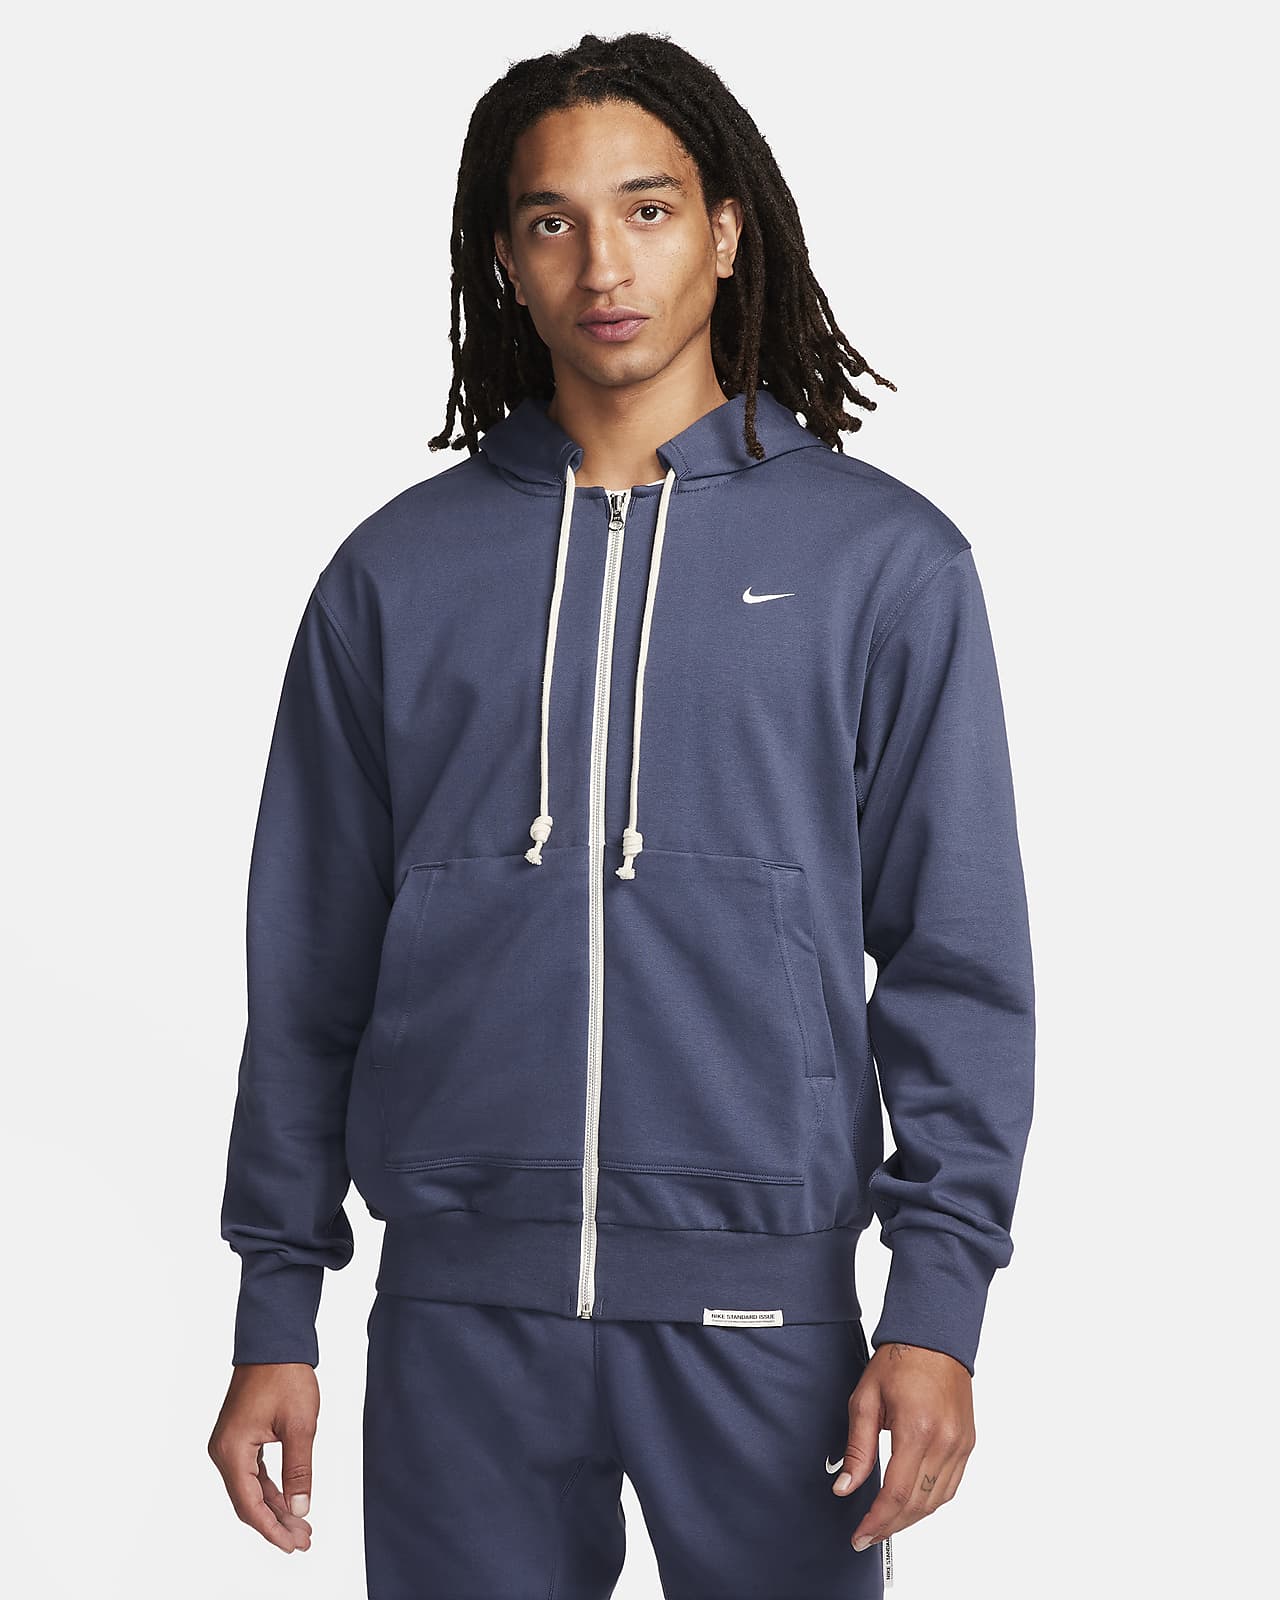 Nike Standard Issue Men's Dri-FIT Full-Zip Basketball Hoodie.